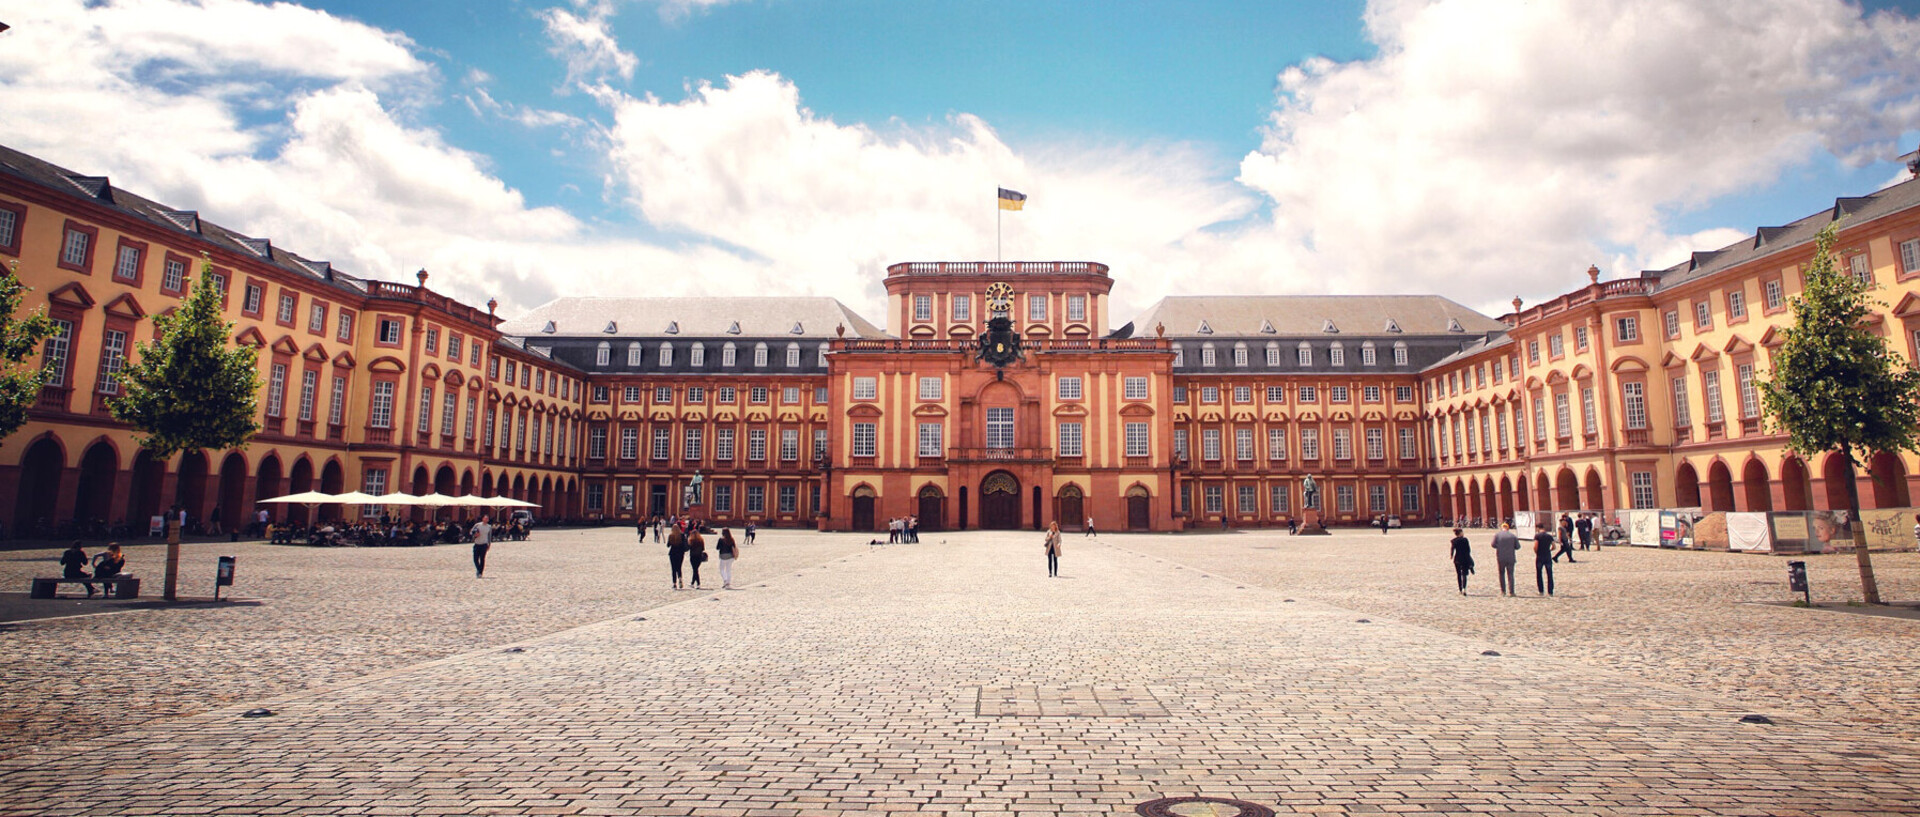 Das Barock-Schloss der Universität Mannheim steht unter blauem Himmel. Es ist von unzähligen Fenstern, rotem Sandstein und einer gelben Fassade geprägt.